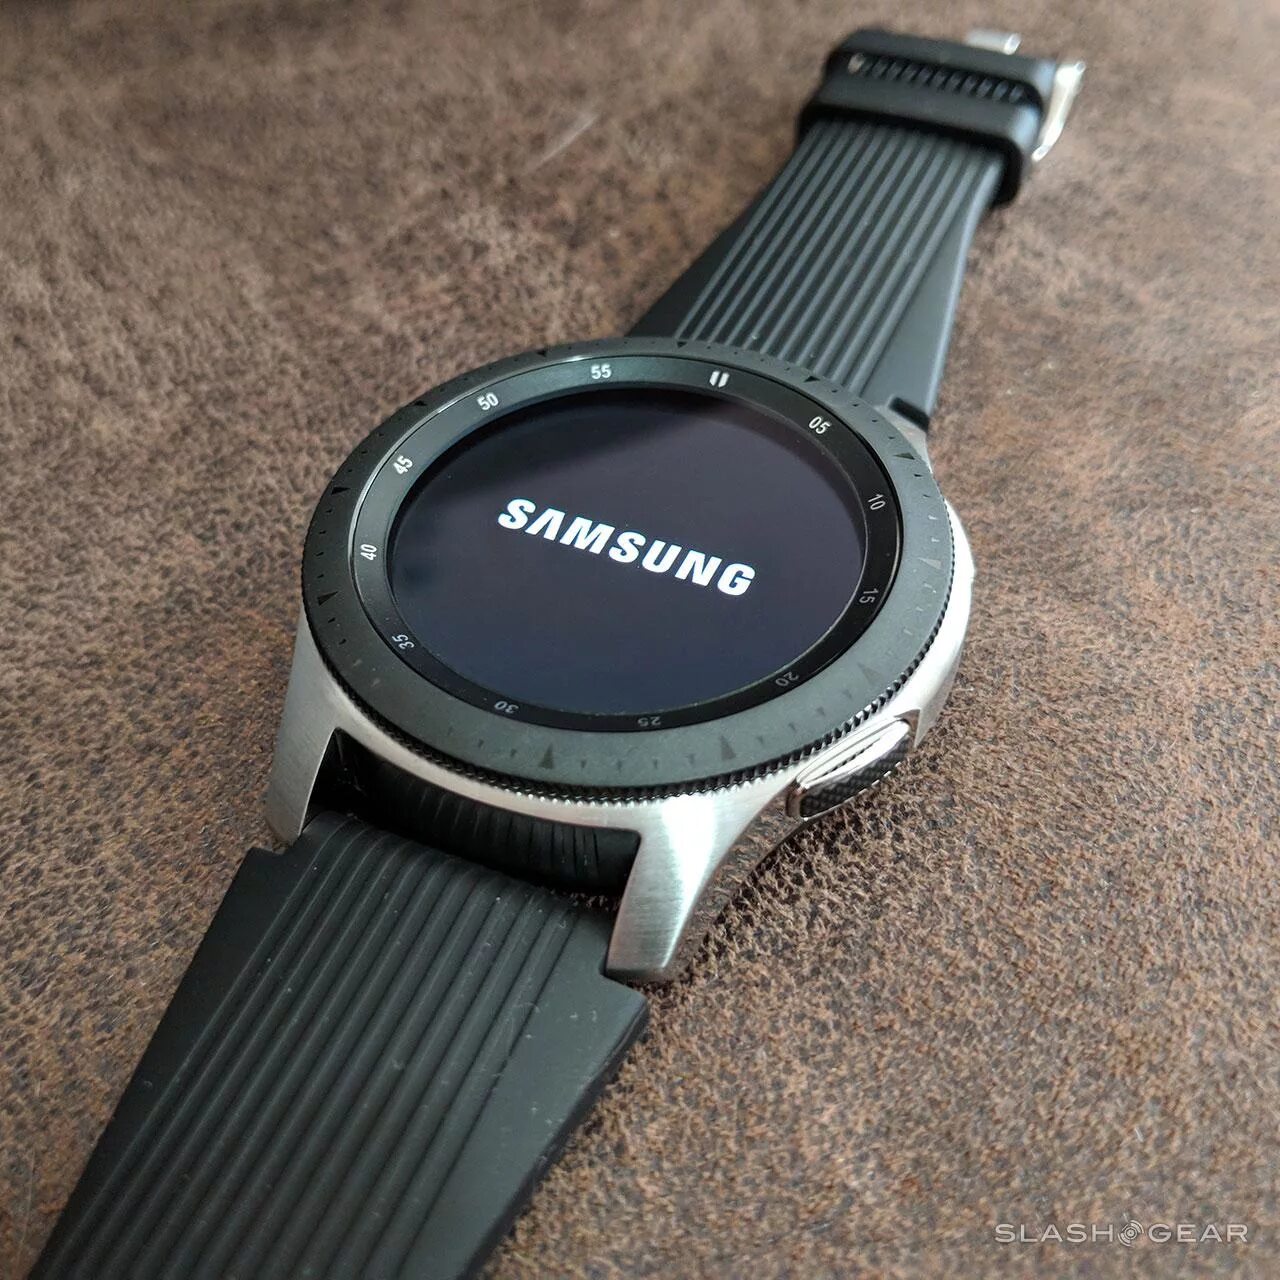 Samsung Galaxy watch r800. Samsung Galaxy watch SM-r800. Samsung Galaxy watch 46mm SM-r800 Silver. Samsung Galaxy watch 46mm Silver r800. Galaxy watch пленка